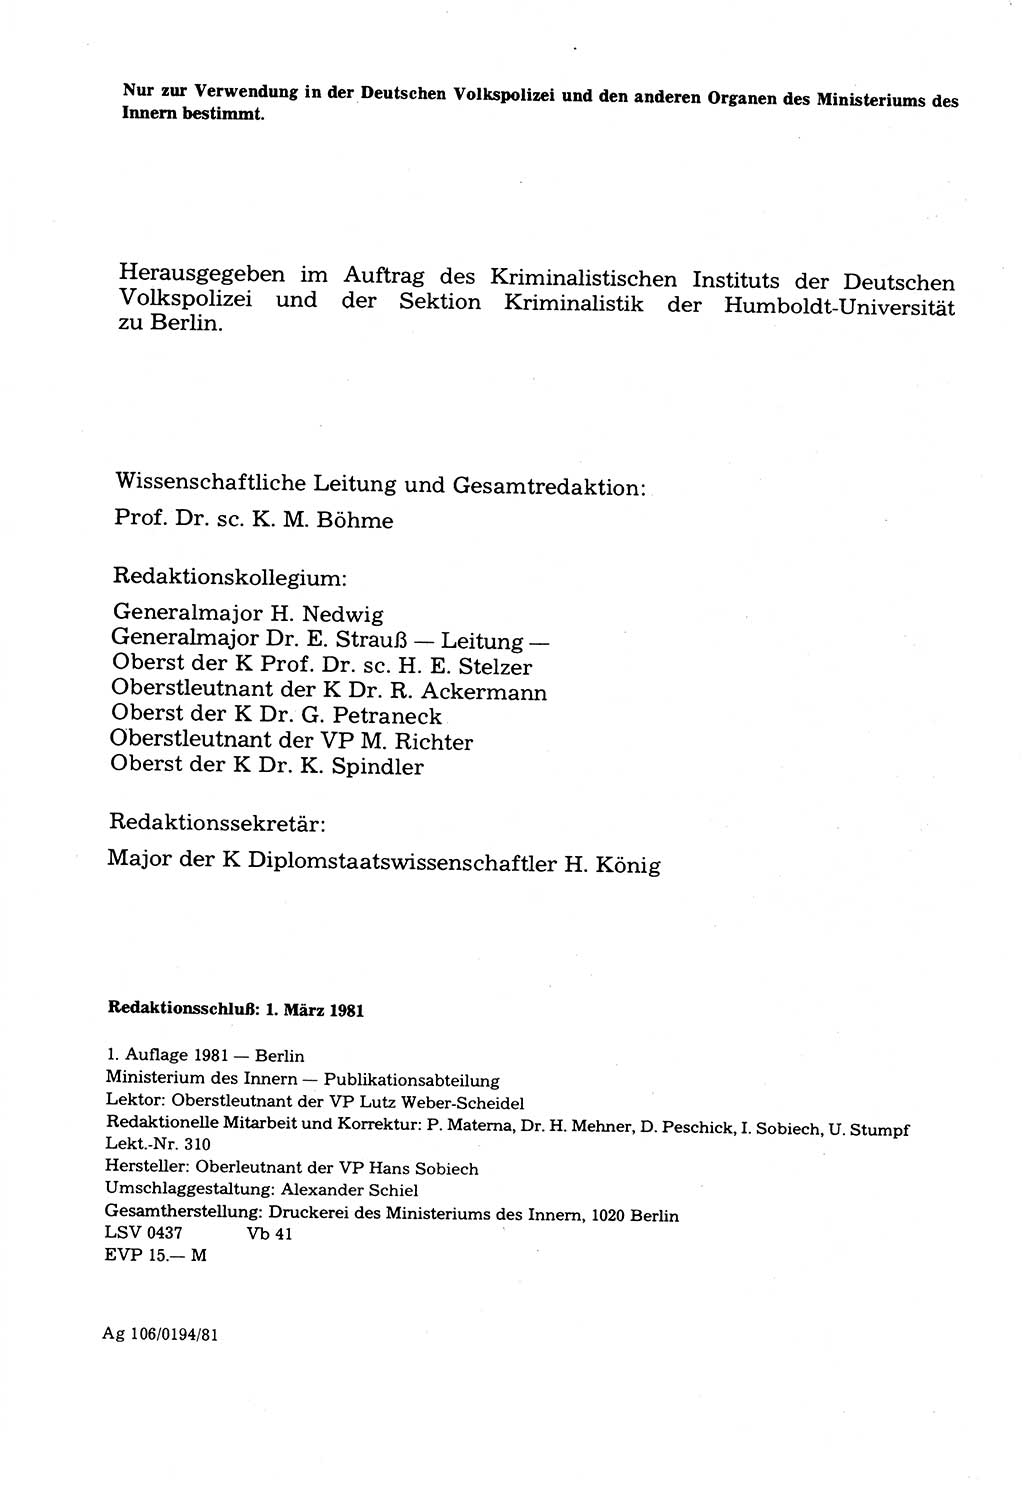 Wörterbuch der sozialistischen Kriminalistik [Deutsche Demokratische Republik (DDR)] 1981, Seite 4 (Wb. soz. Krim. DDR 1981, S. 4)